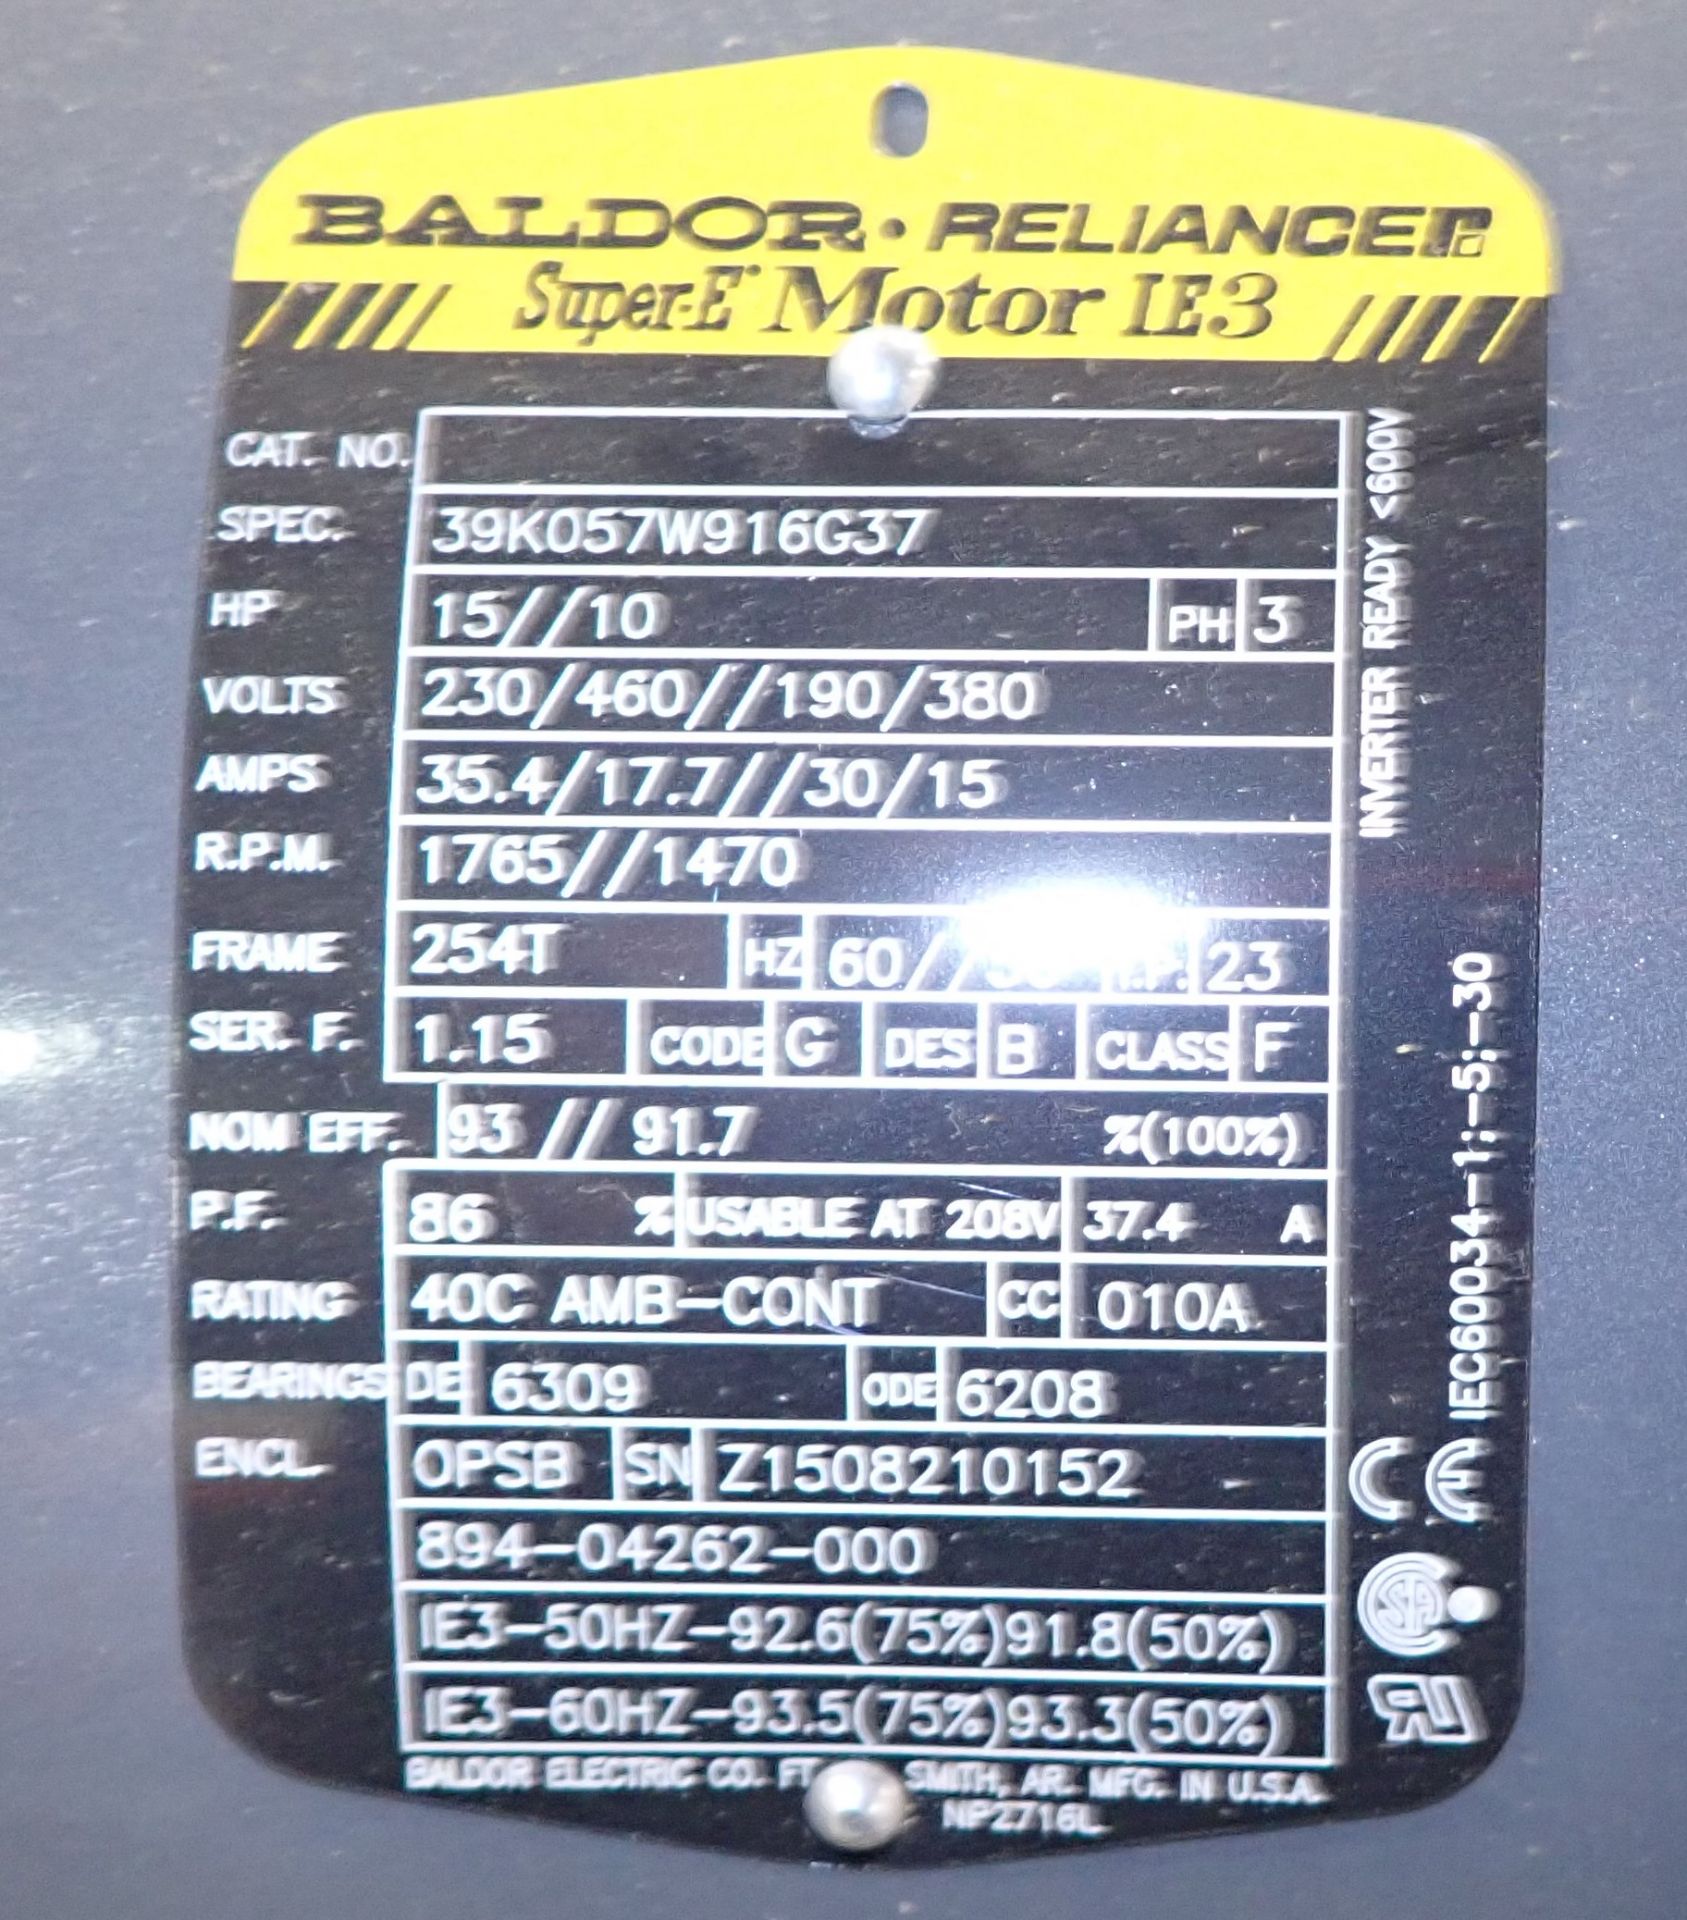 15/10 HP Baldor Motor - Image 3 of 3